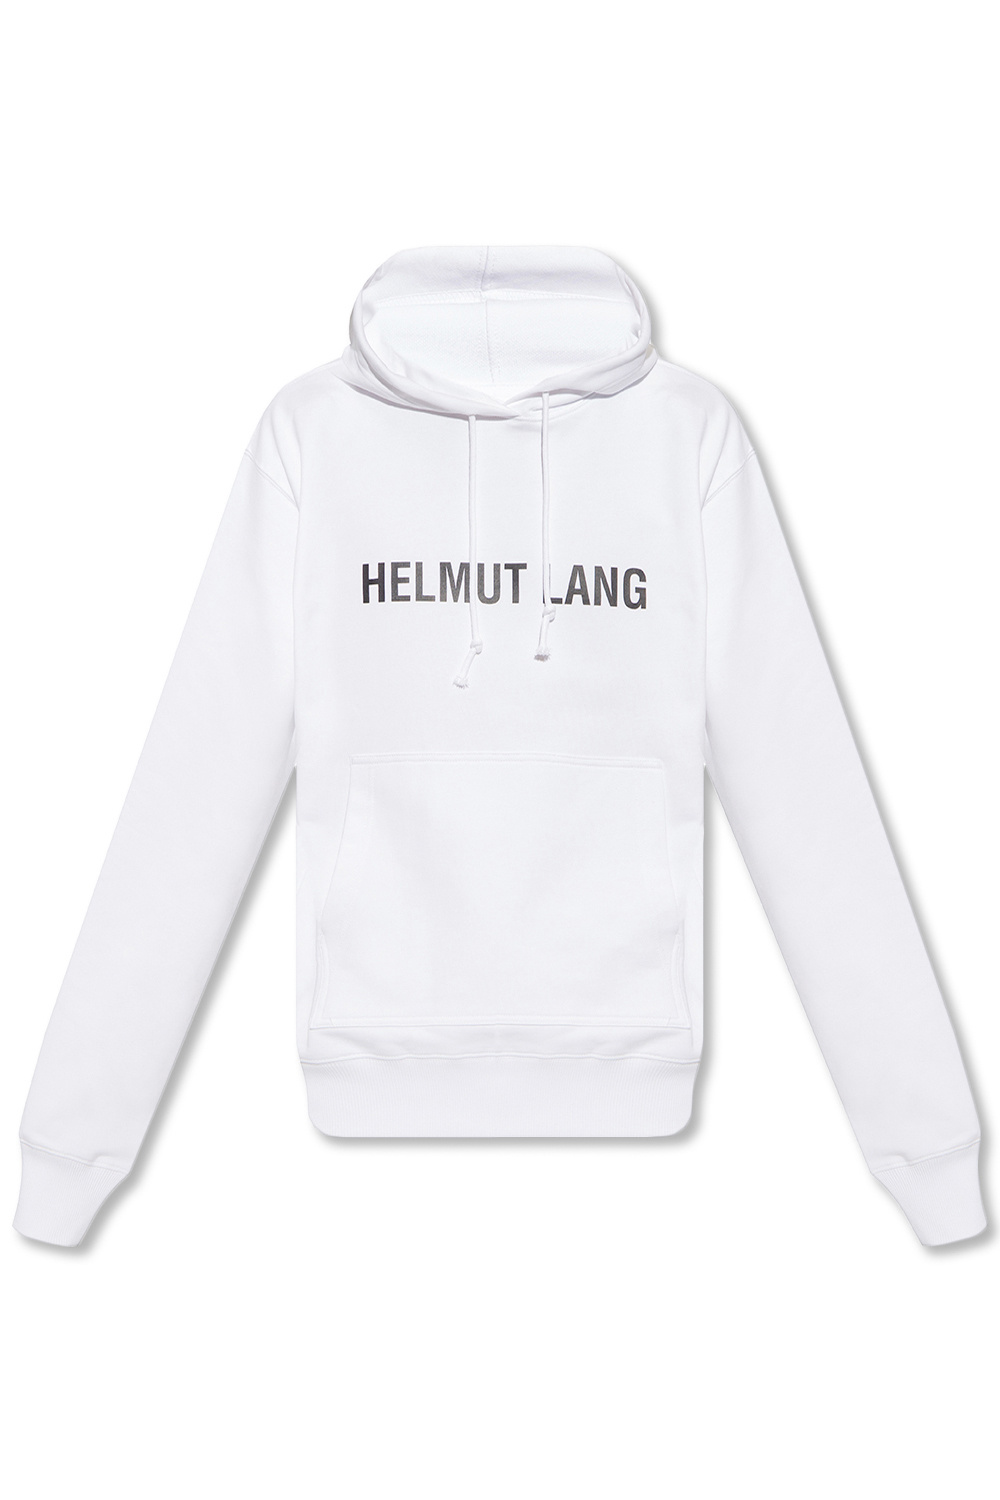 Helmut Lang Christian Wijnants T-Shirts & Vests for Men